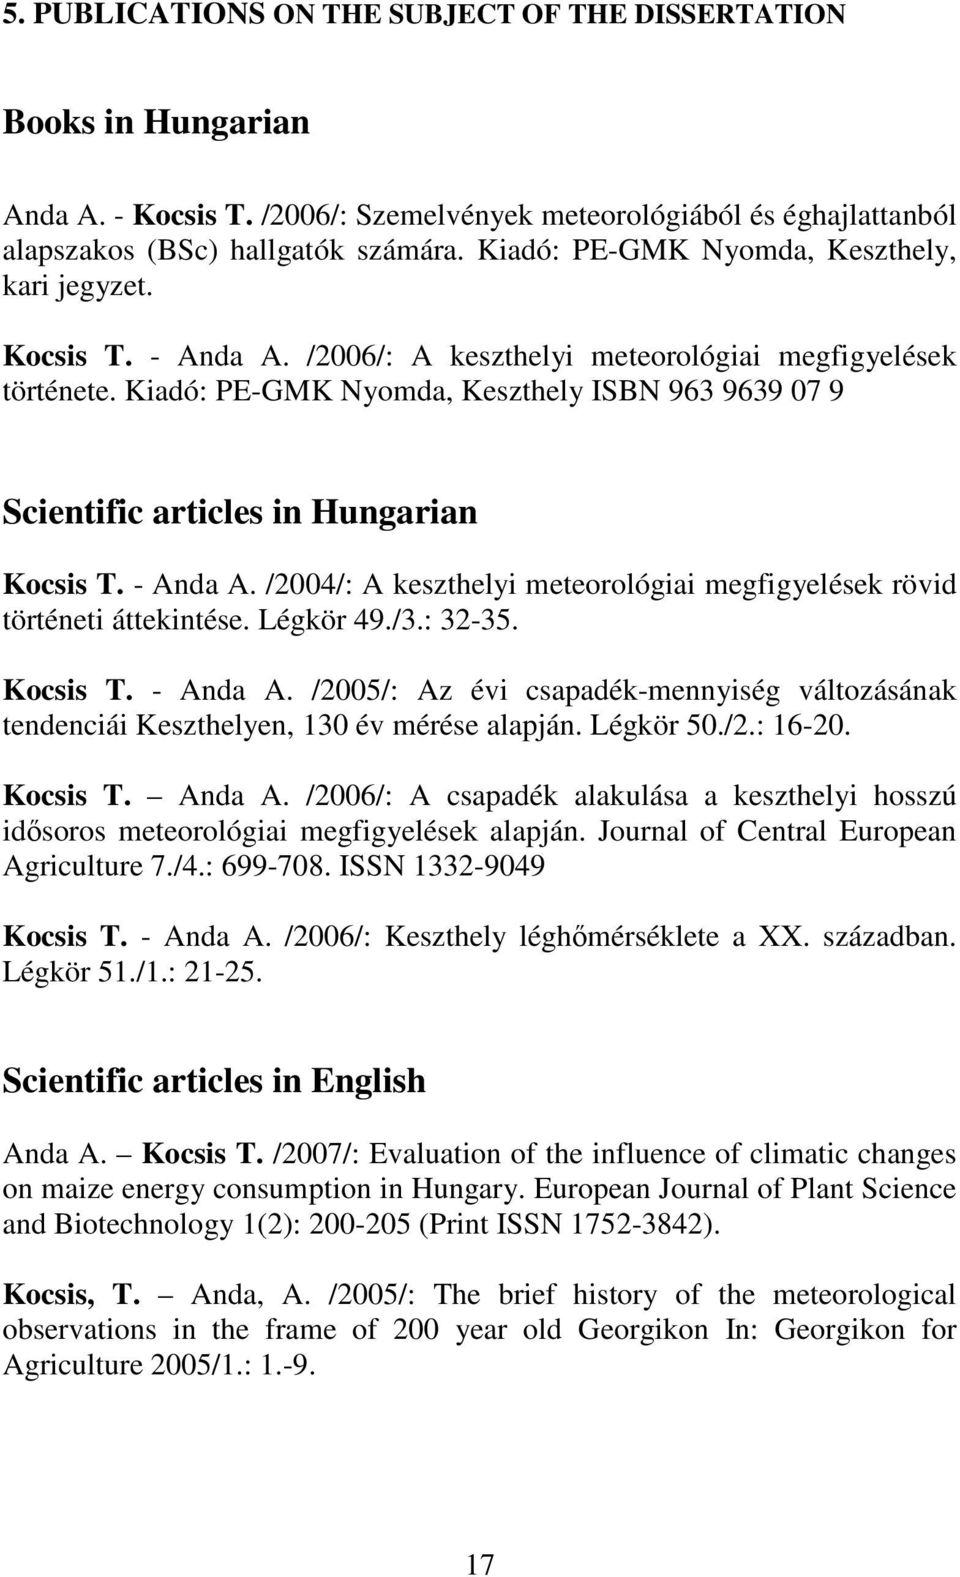 Kiadó: PE-GMK Nyomda, Keszthely ISBN 963 9639 07 9 Scientific articles in Hungarian Kocsis T. - Anda A. /2004/: A keszthelyi meteorológiai megfigyelések rövid történeti áttekintése. Légkör 49./3.